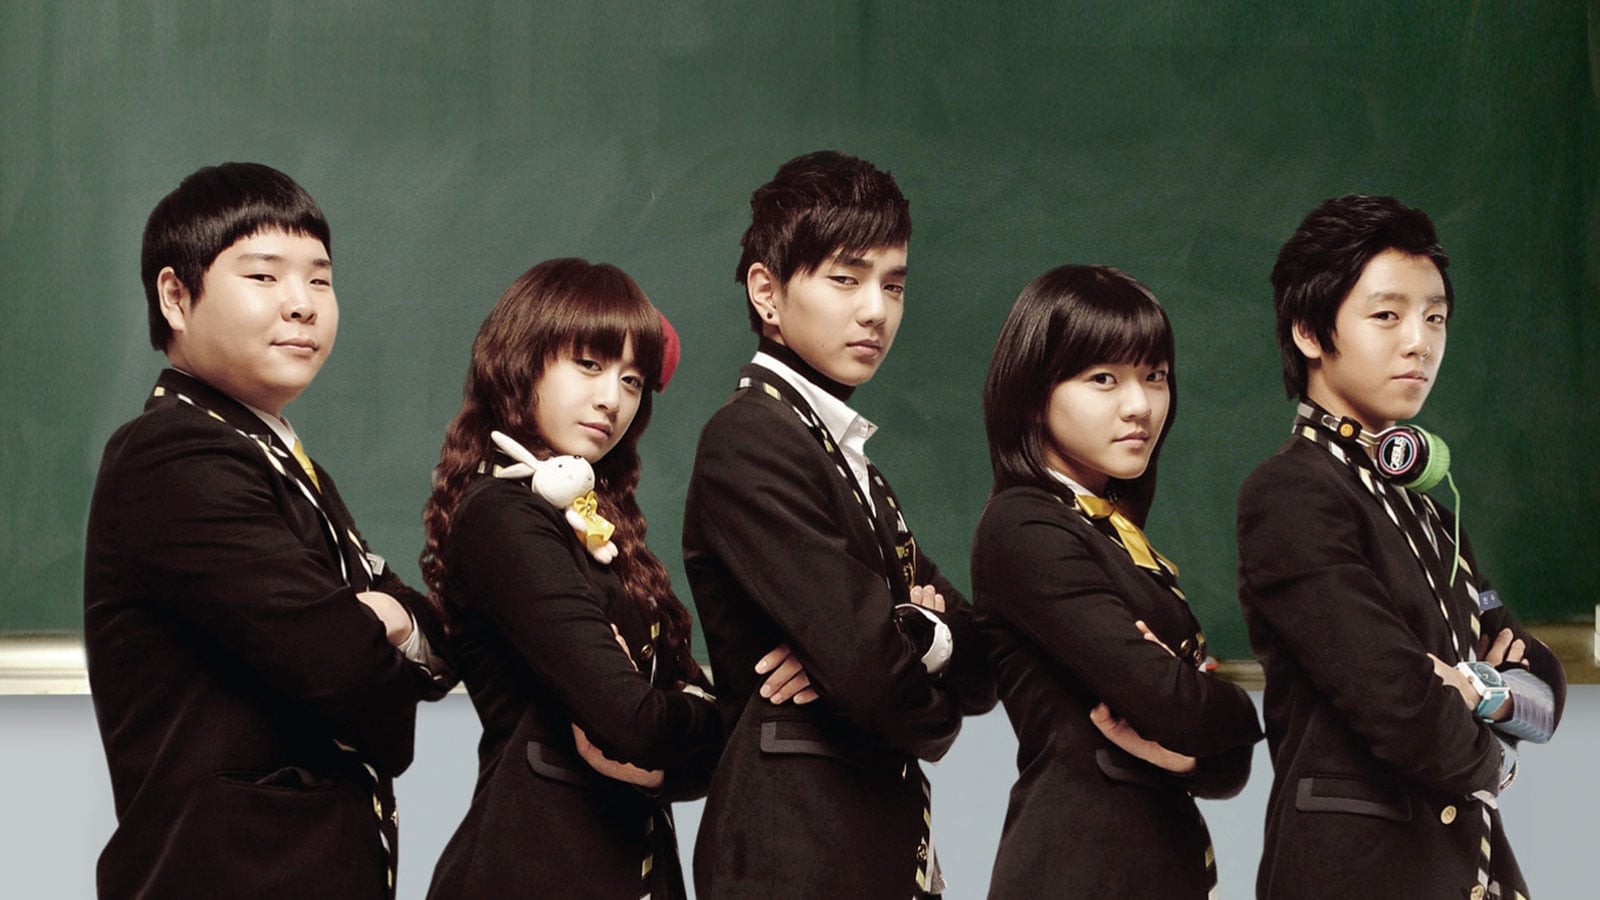 Phim học đường Hàn Quốc hay - Bá Vương Học Đường - Master of Study (2010)